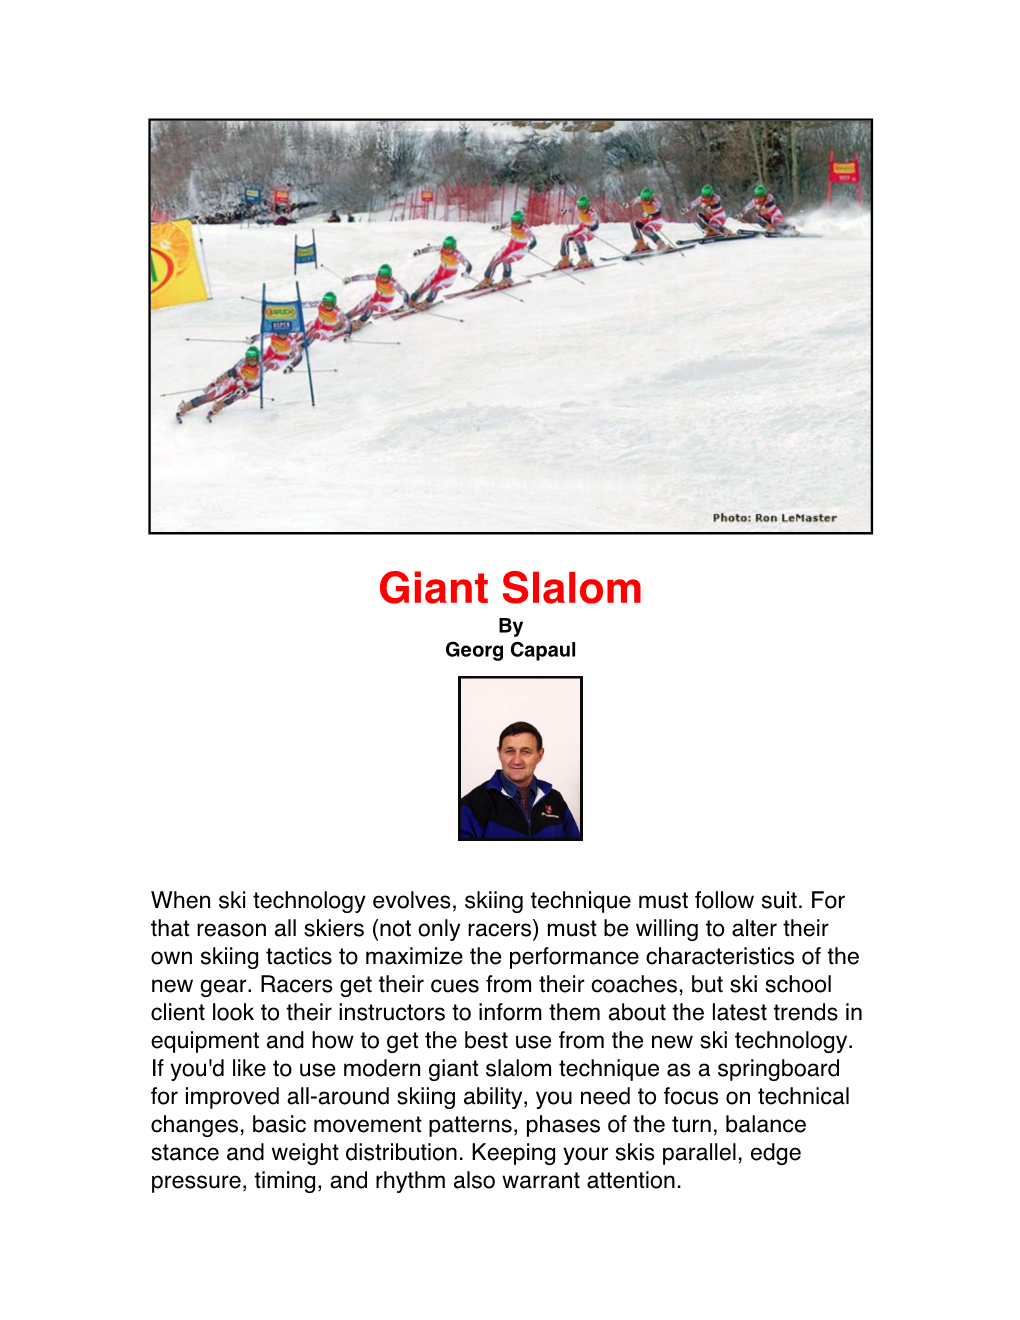 Giant Slalom by Georg Capaul